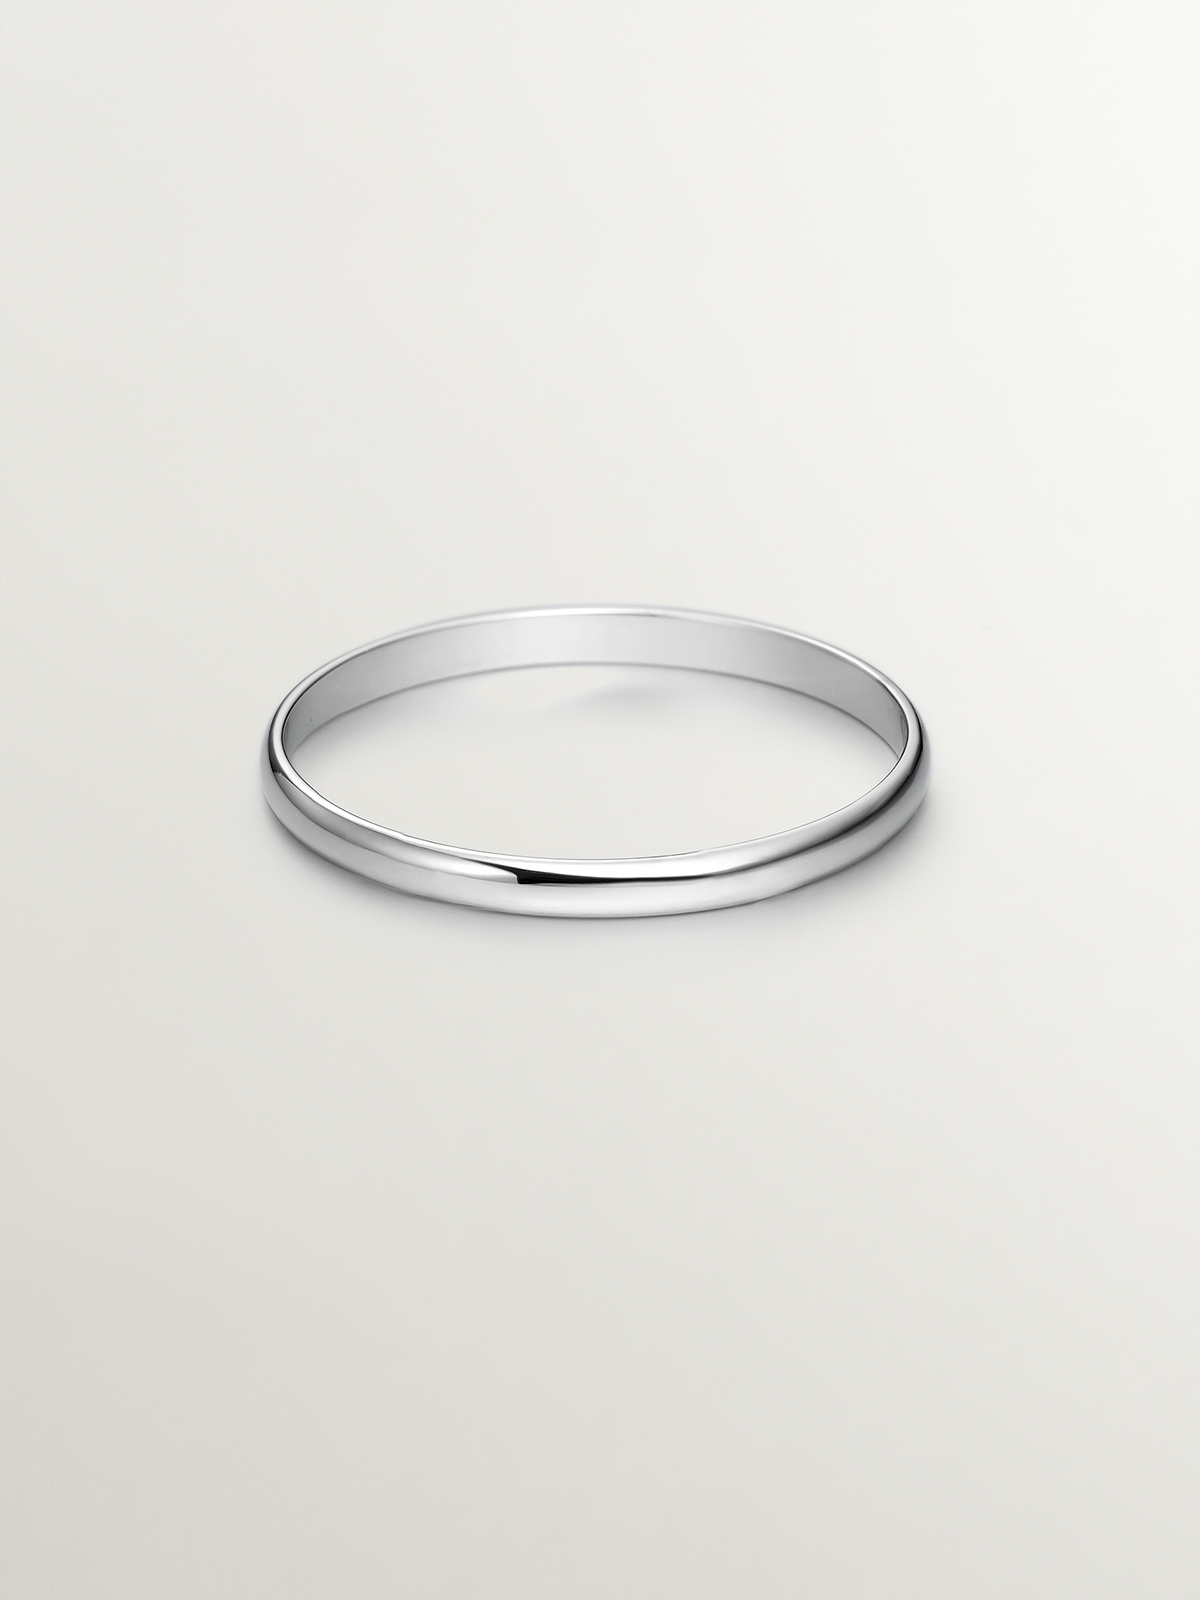 1.95mm half round white gold wedding ring